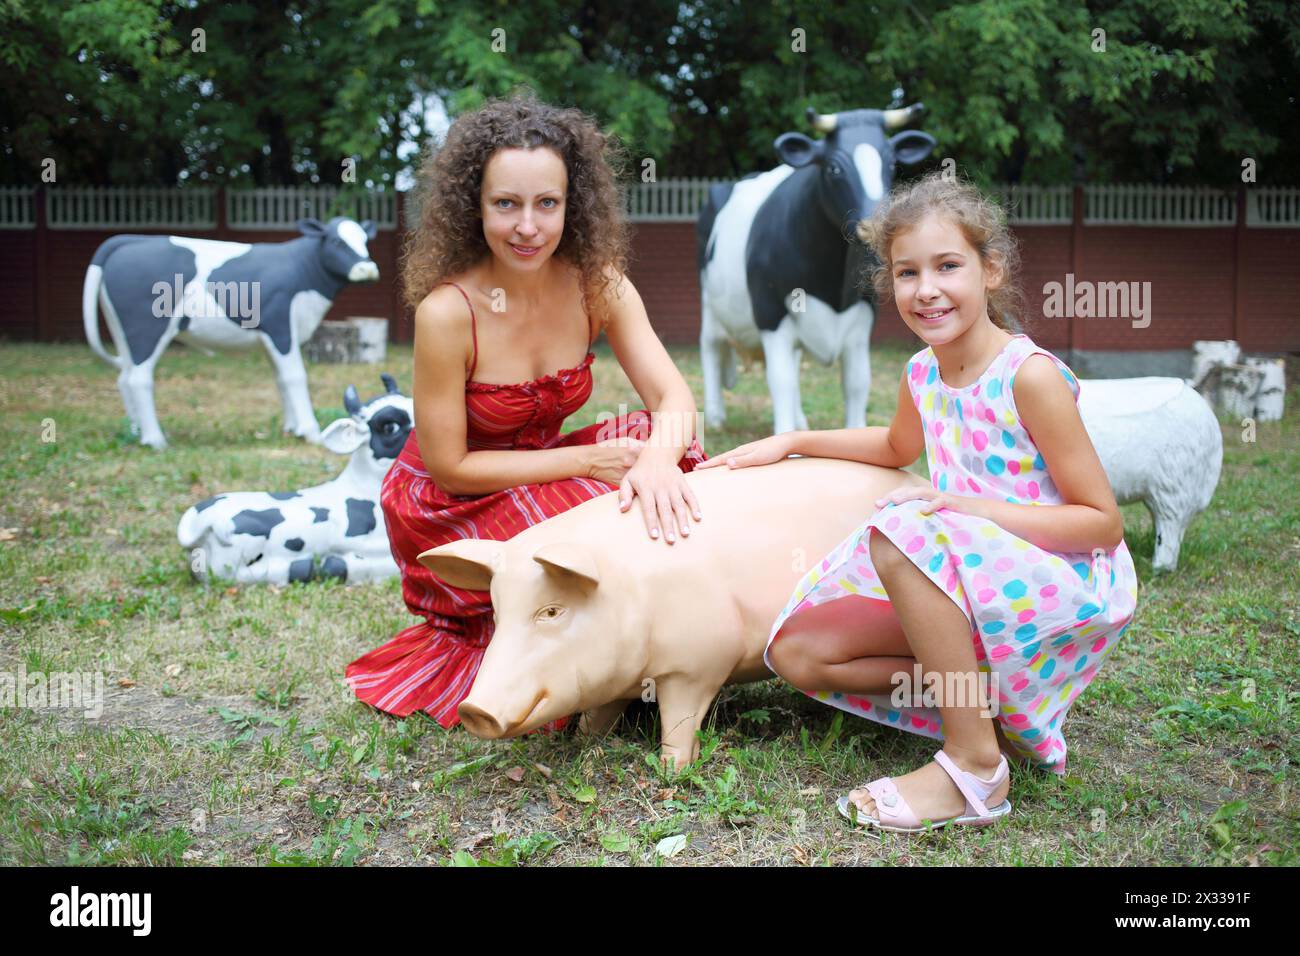 MOSCOU - 13 août 2014 : mère et fille (avec autorisations de modèle) près de jardin sculptures porc et trois vaches sur le territoire du Collège de l'hospitalité Banque D'Images